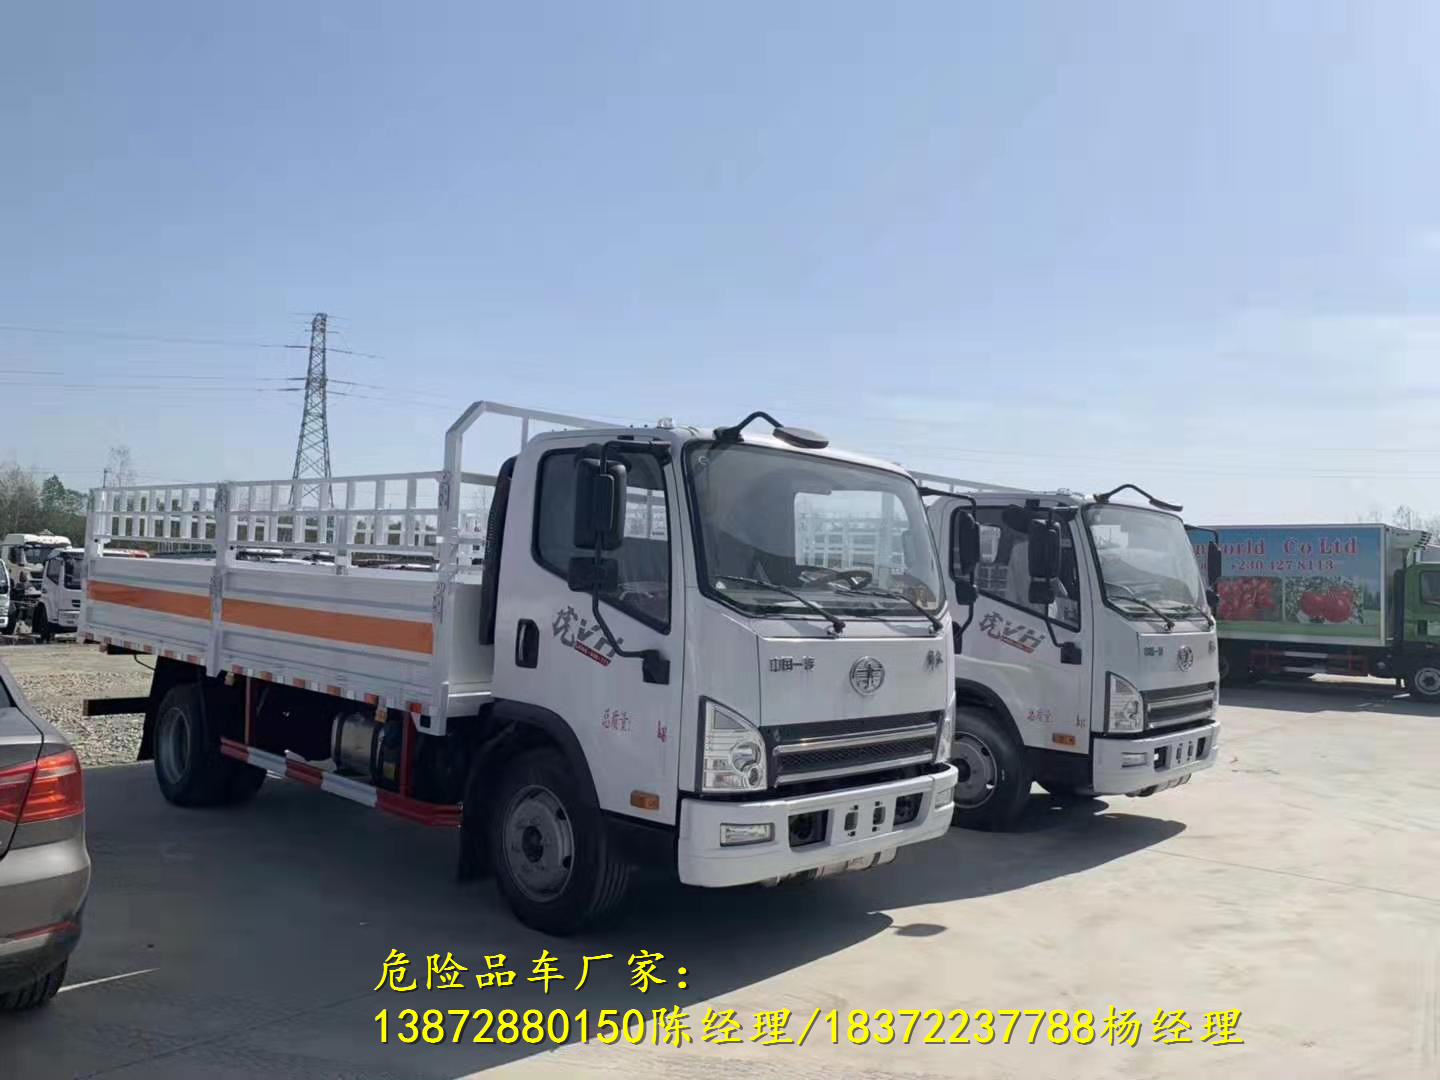 鄢陵县2020年新规9.6米废旧电池运输车代理点 危险品车厂家